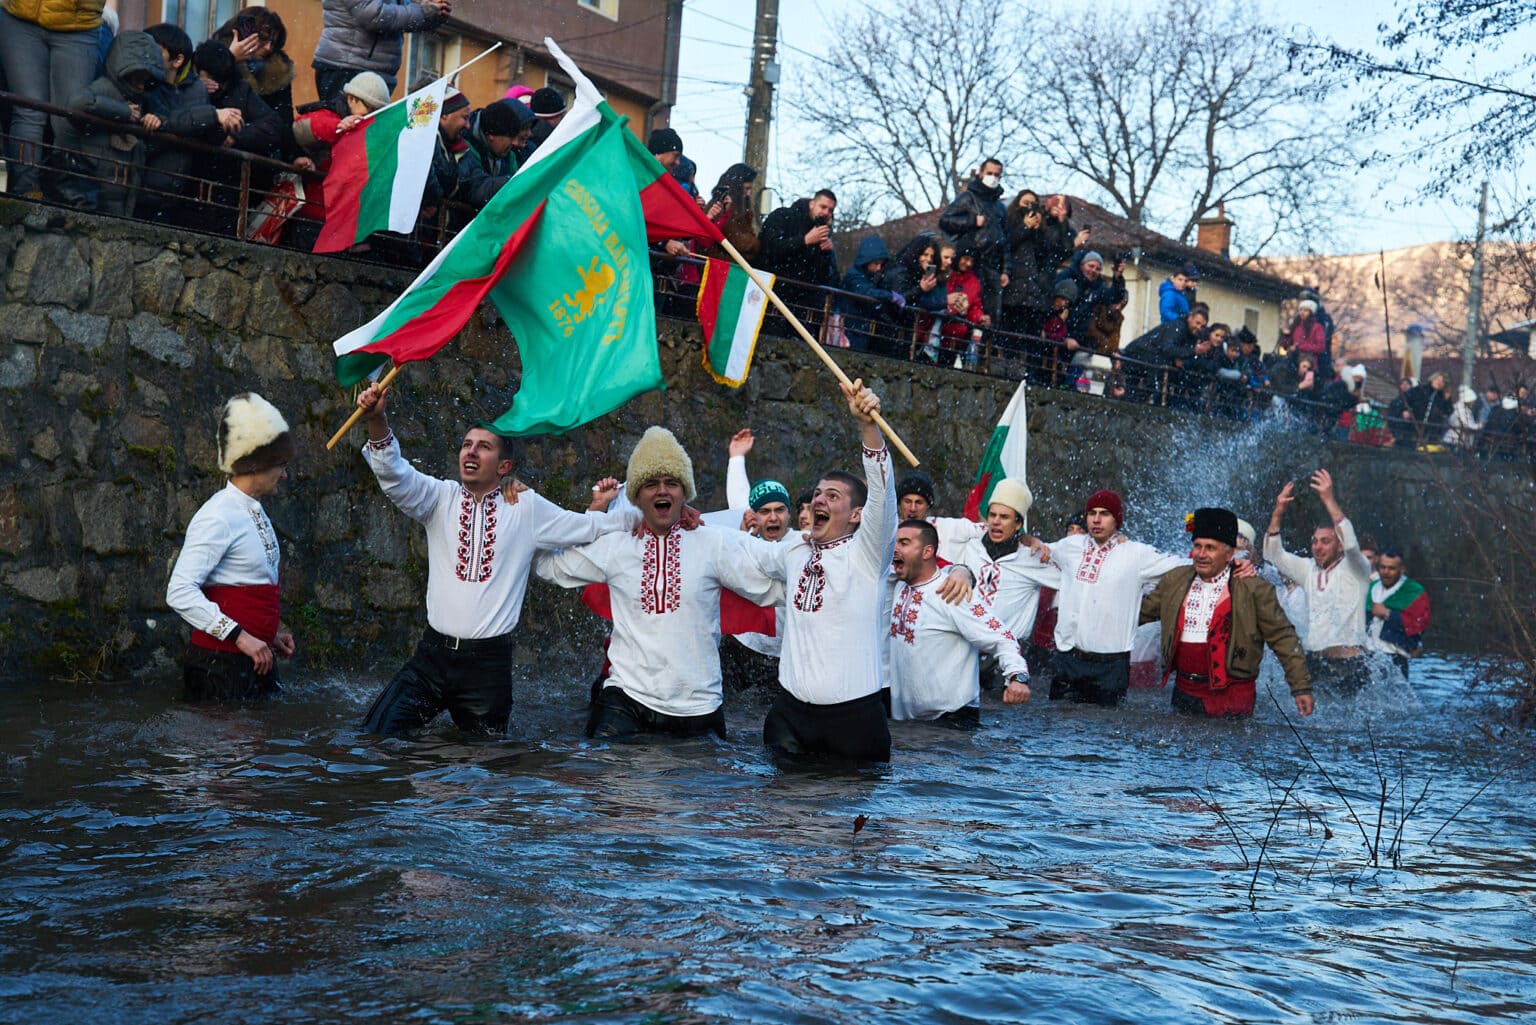 Men waving flags in river